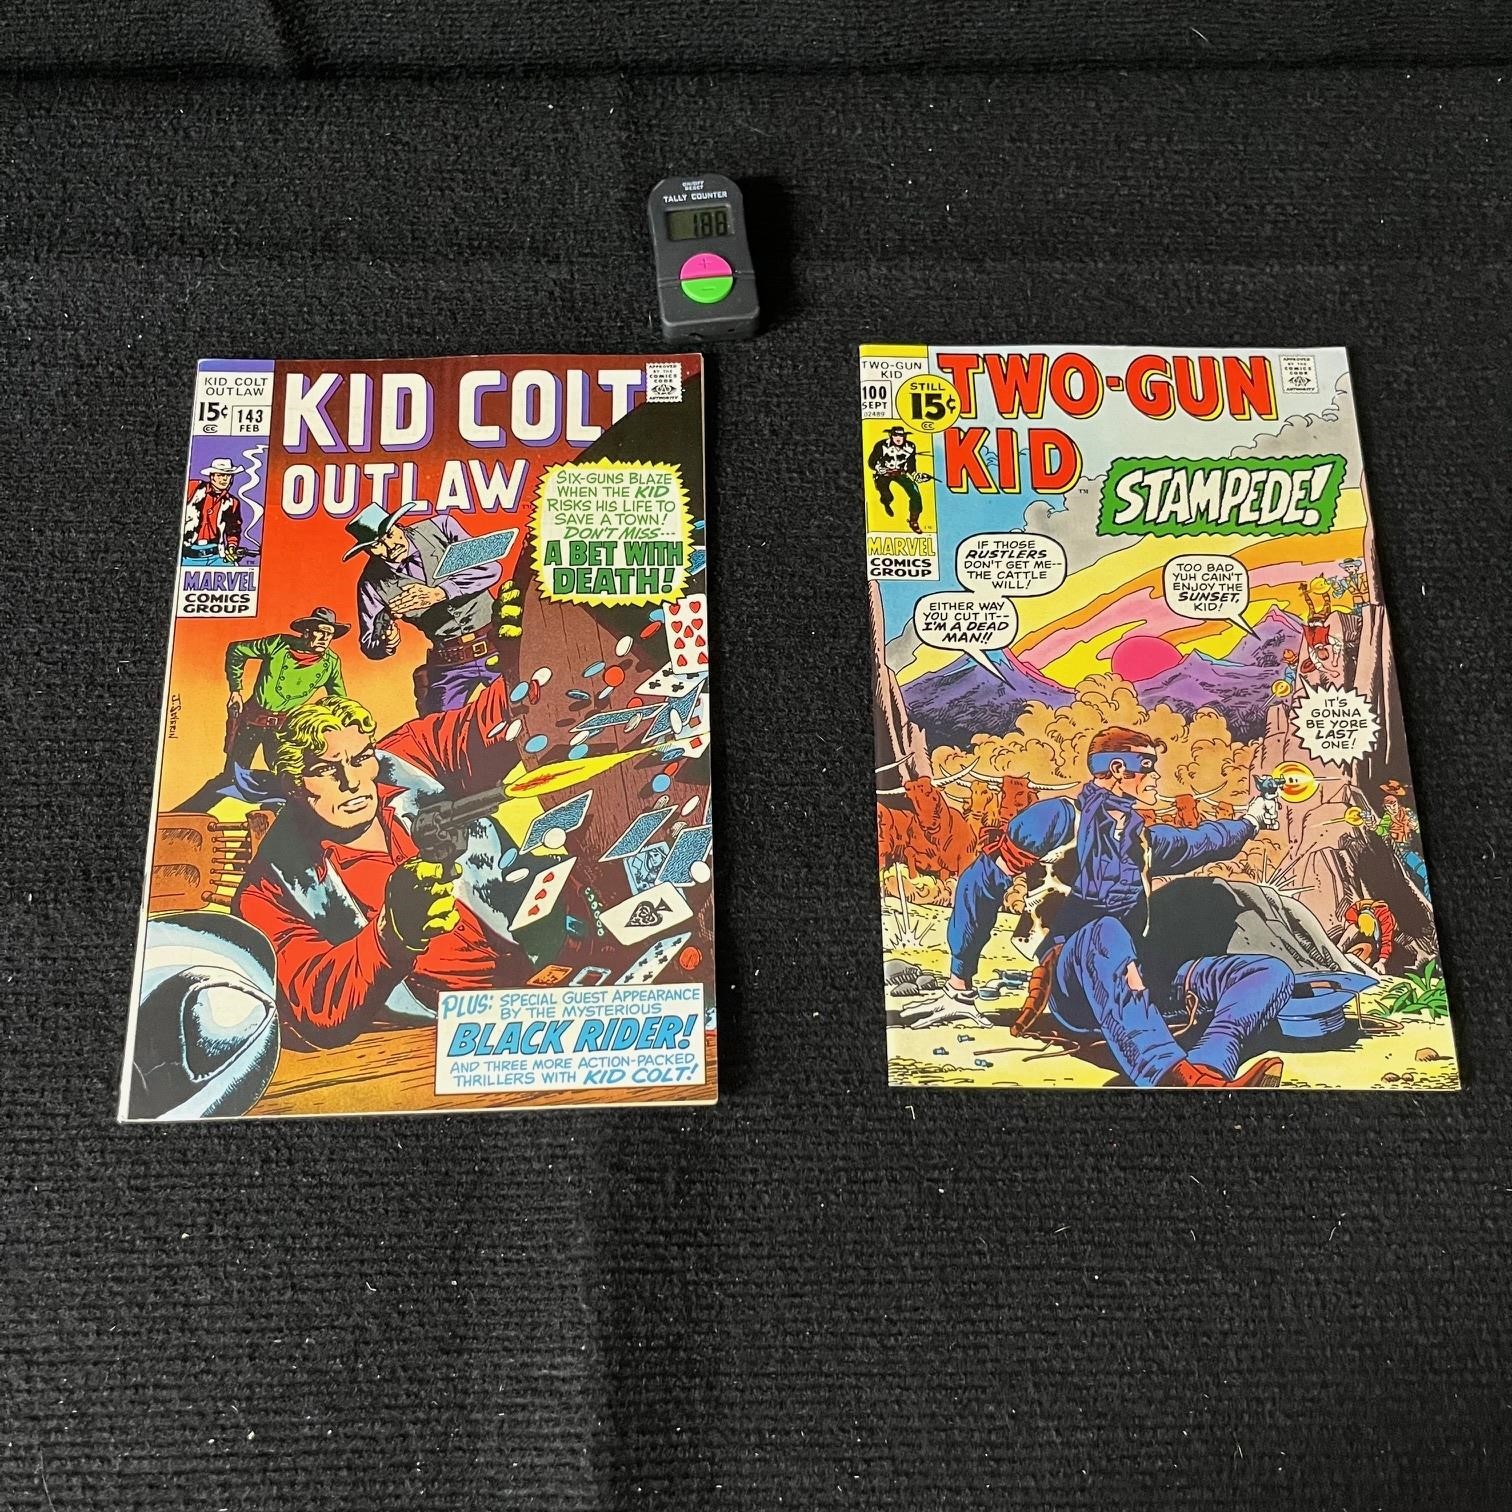 Kid Colt Outlaw 143 & Two Gun kid 100